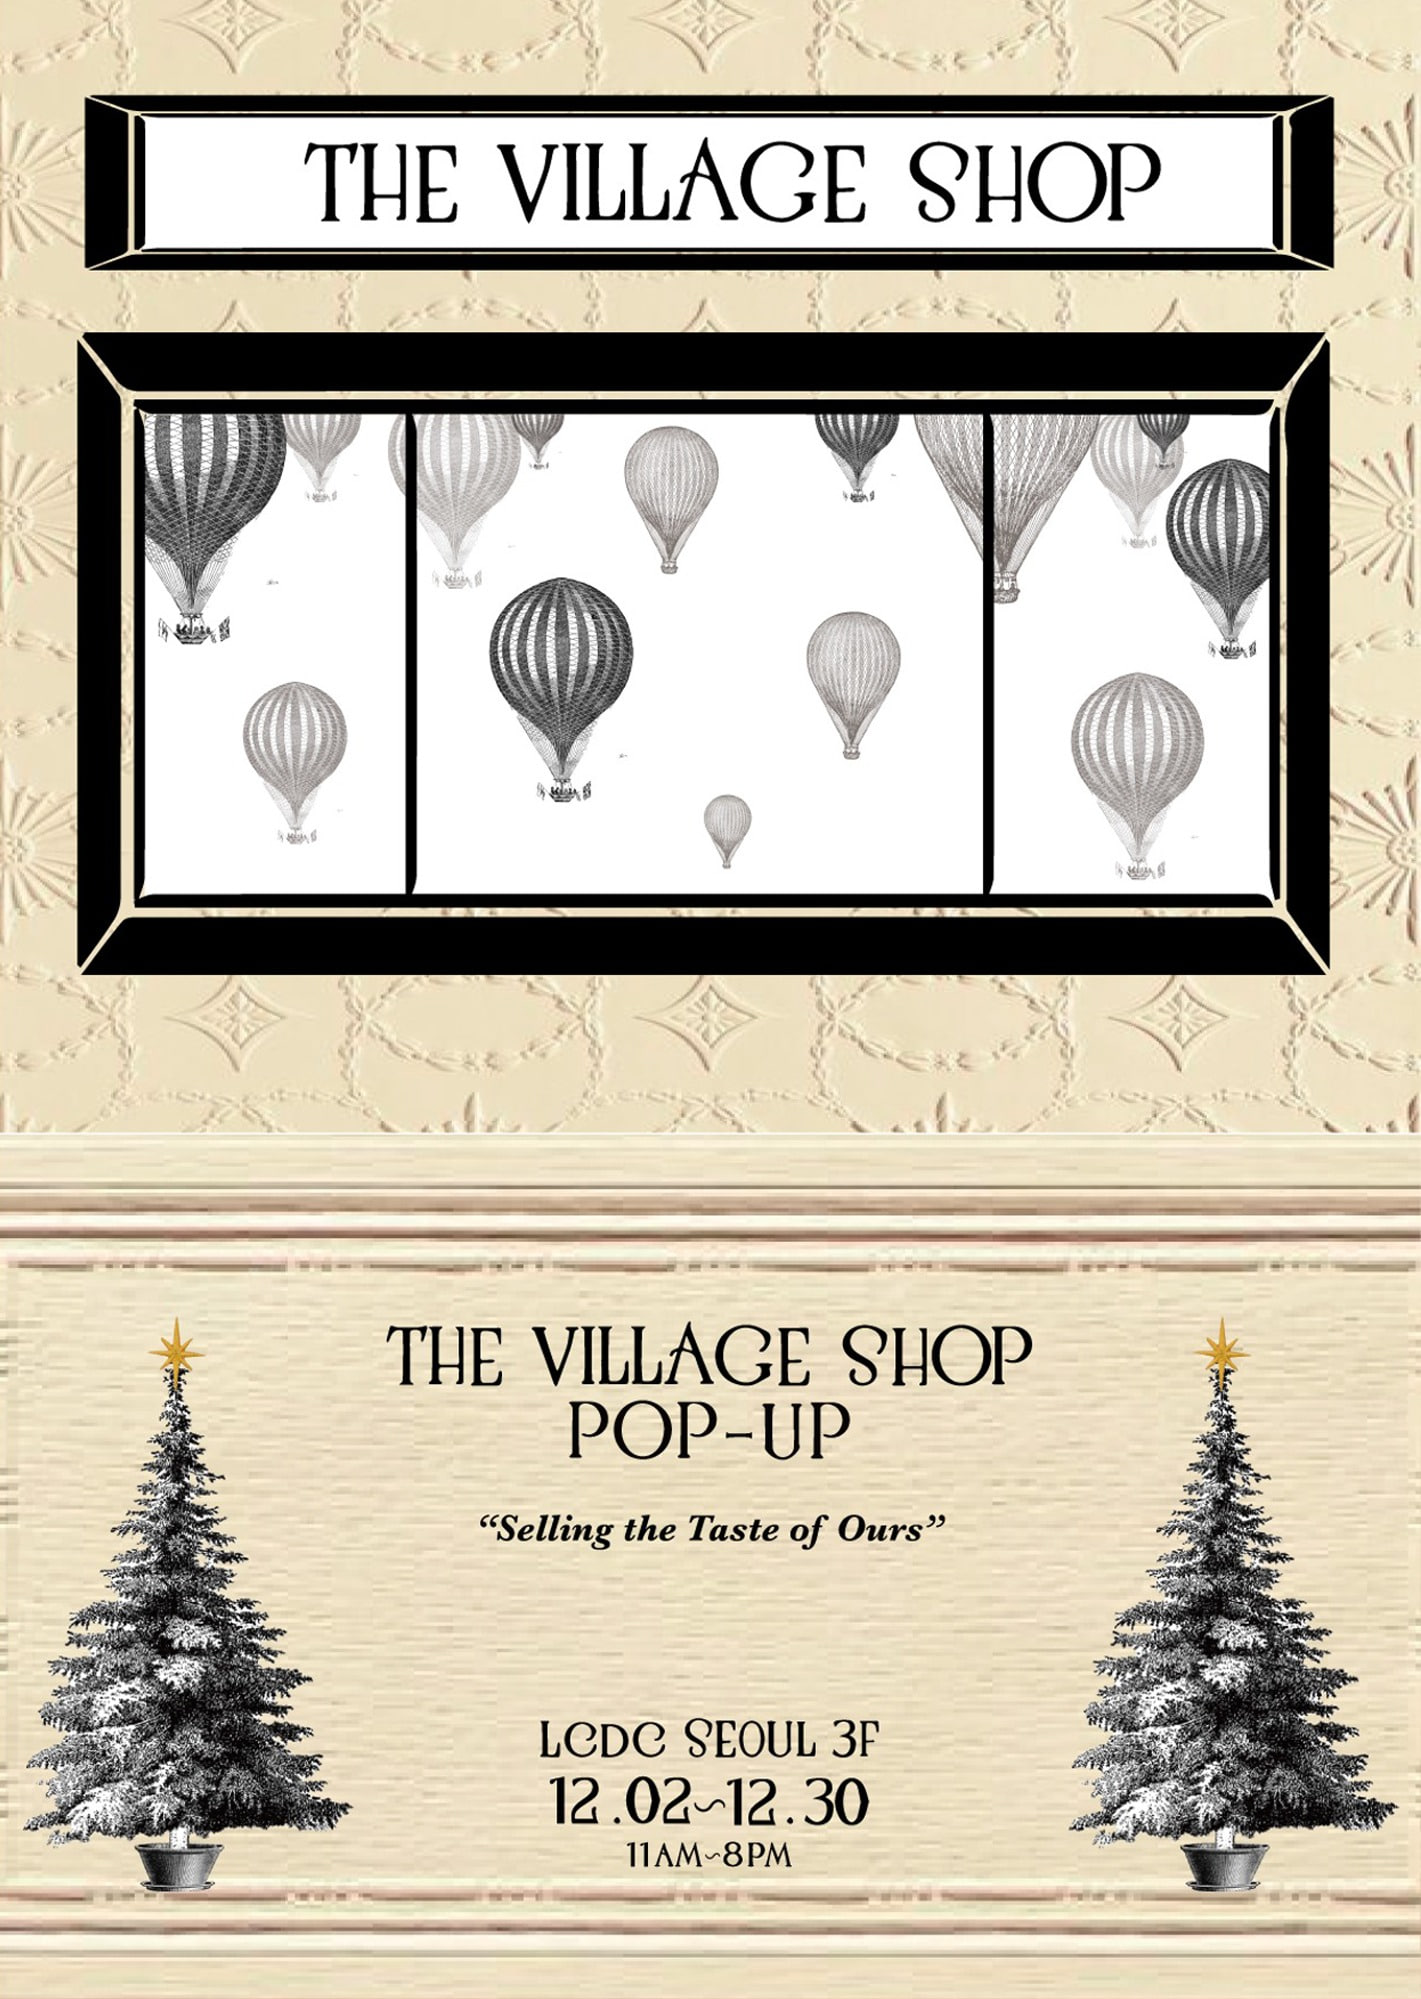 The village shop POP-UP Store